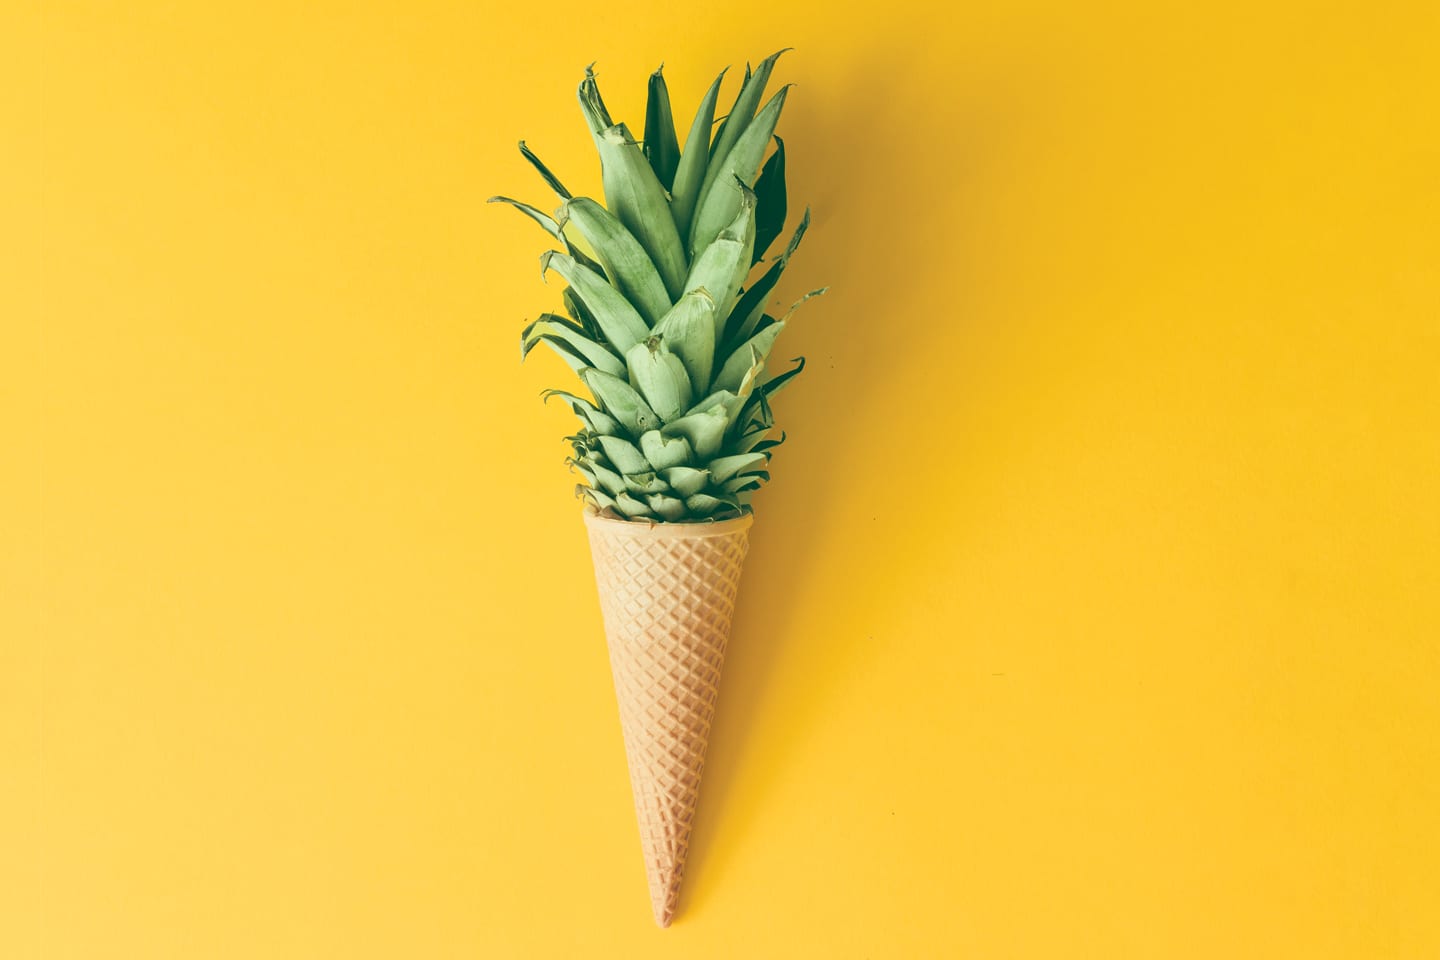 Pineapple top on ice cream cone